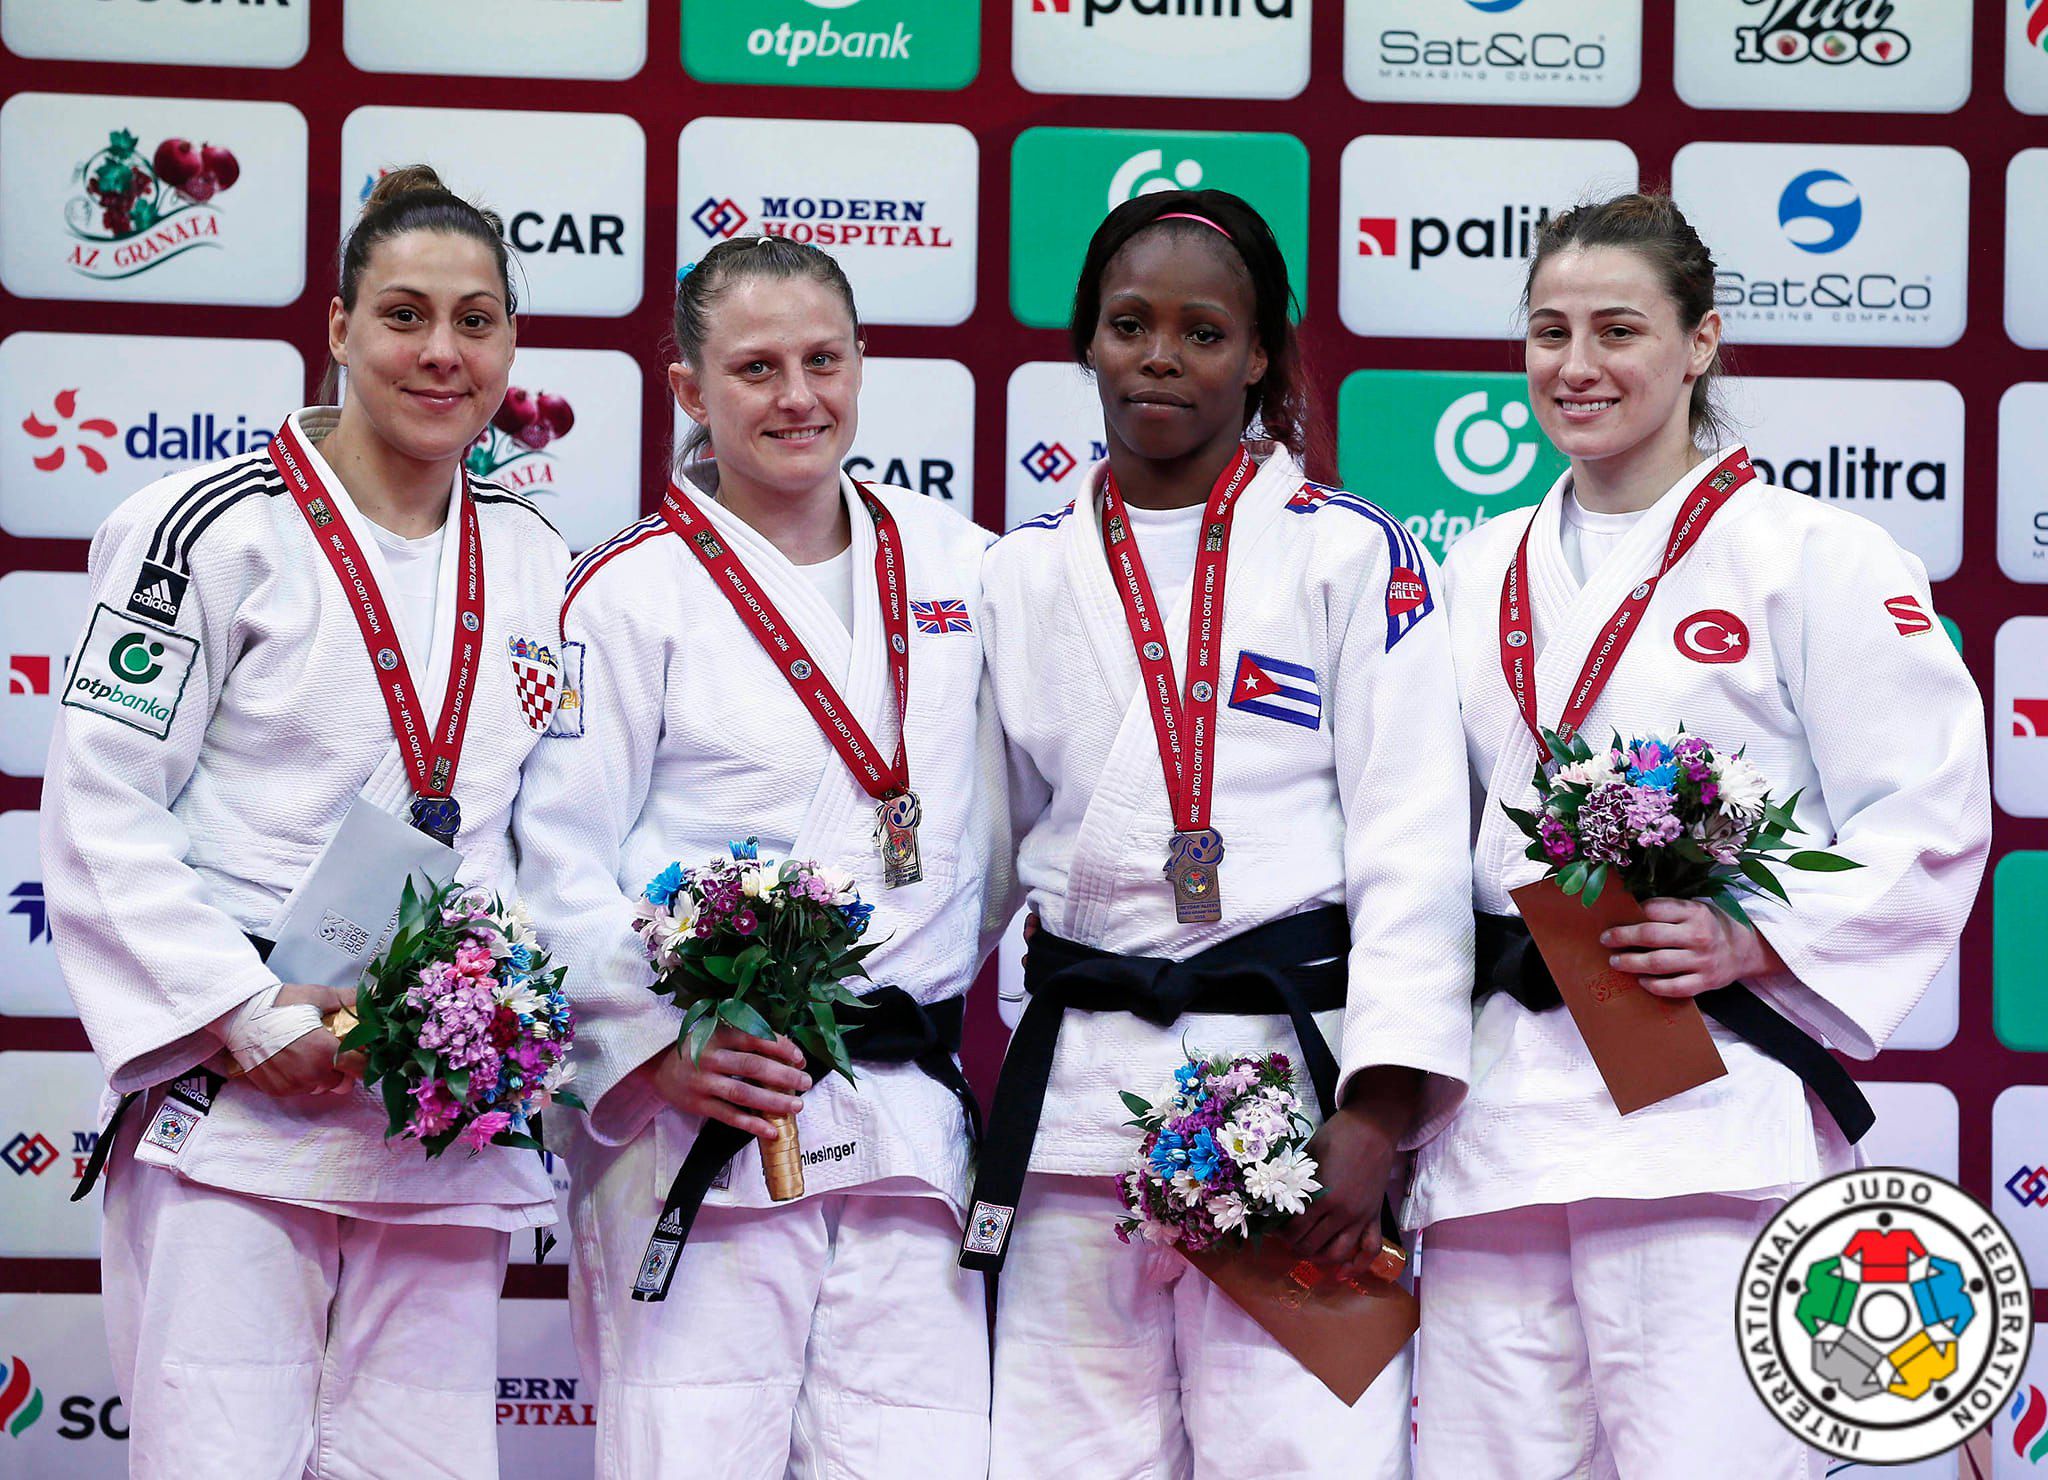 La cubana Maricet Espinosa (tercera de izquierda a derecha), doble campeona panamericana de judo, falleció a los 34 años (Crédito: Federación Internacional de Judo)